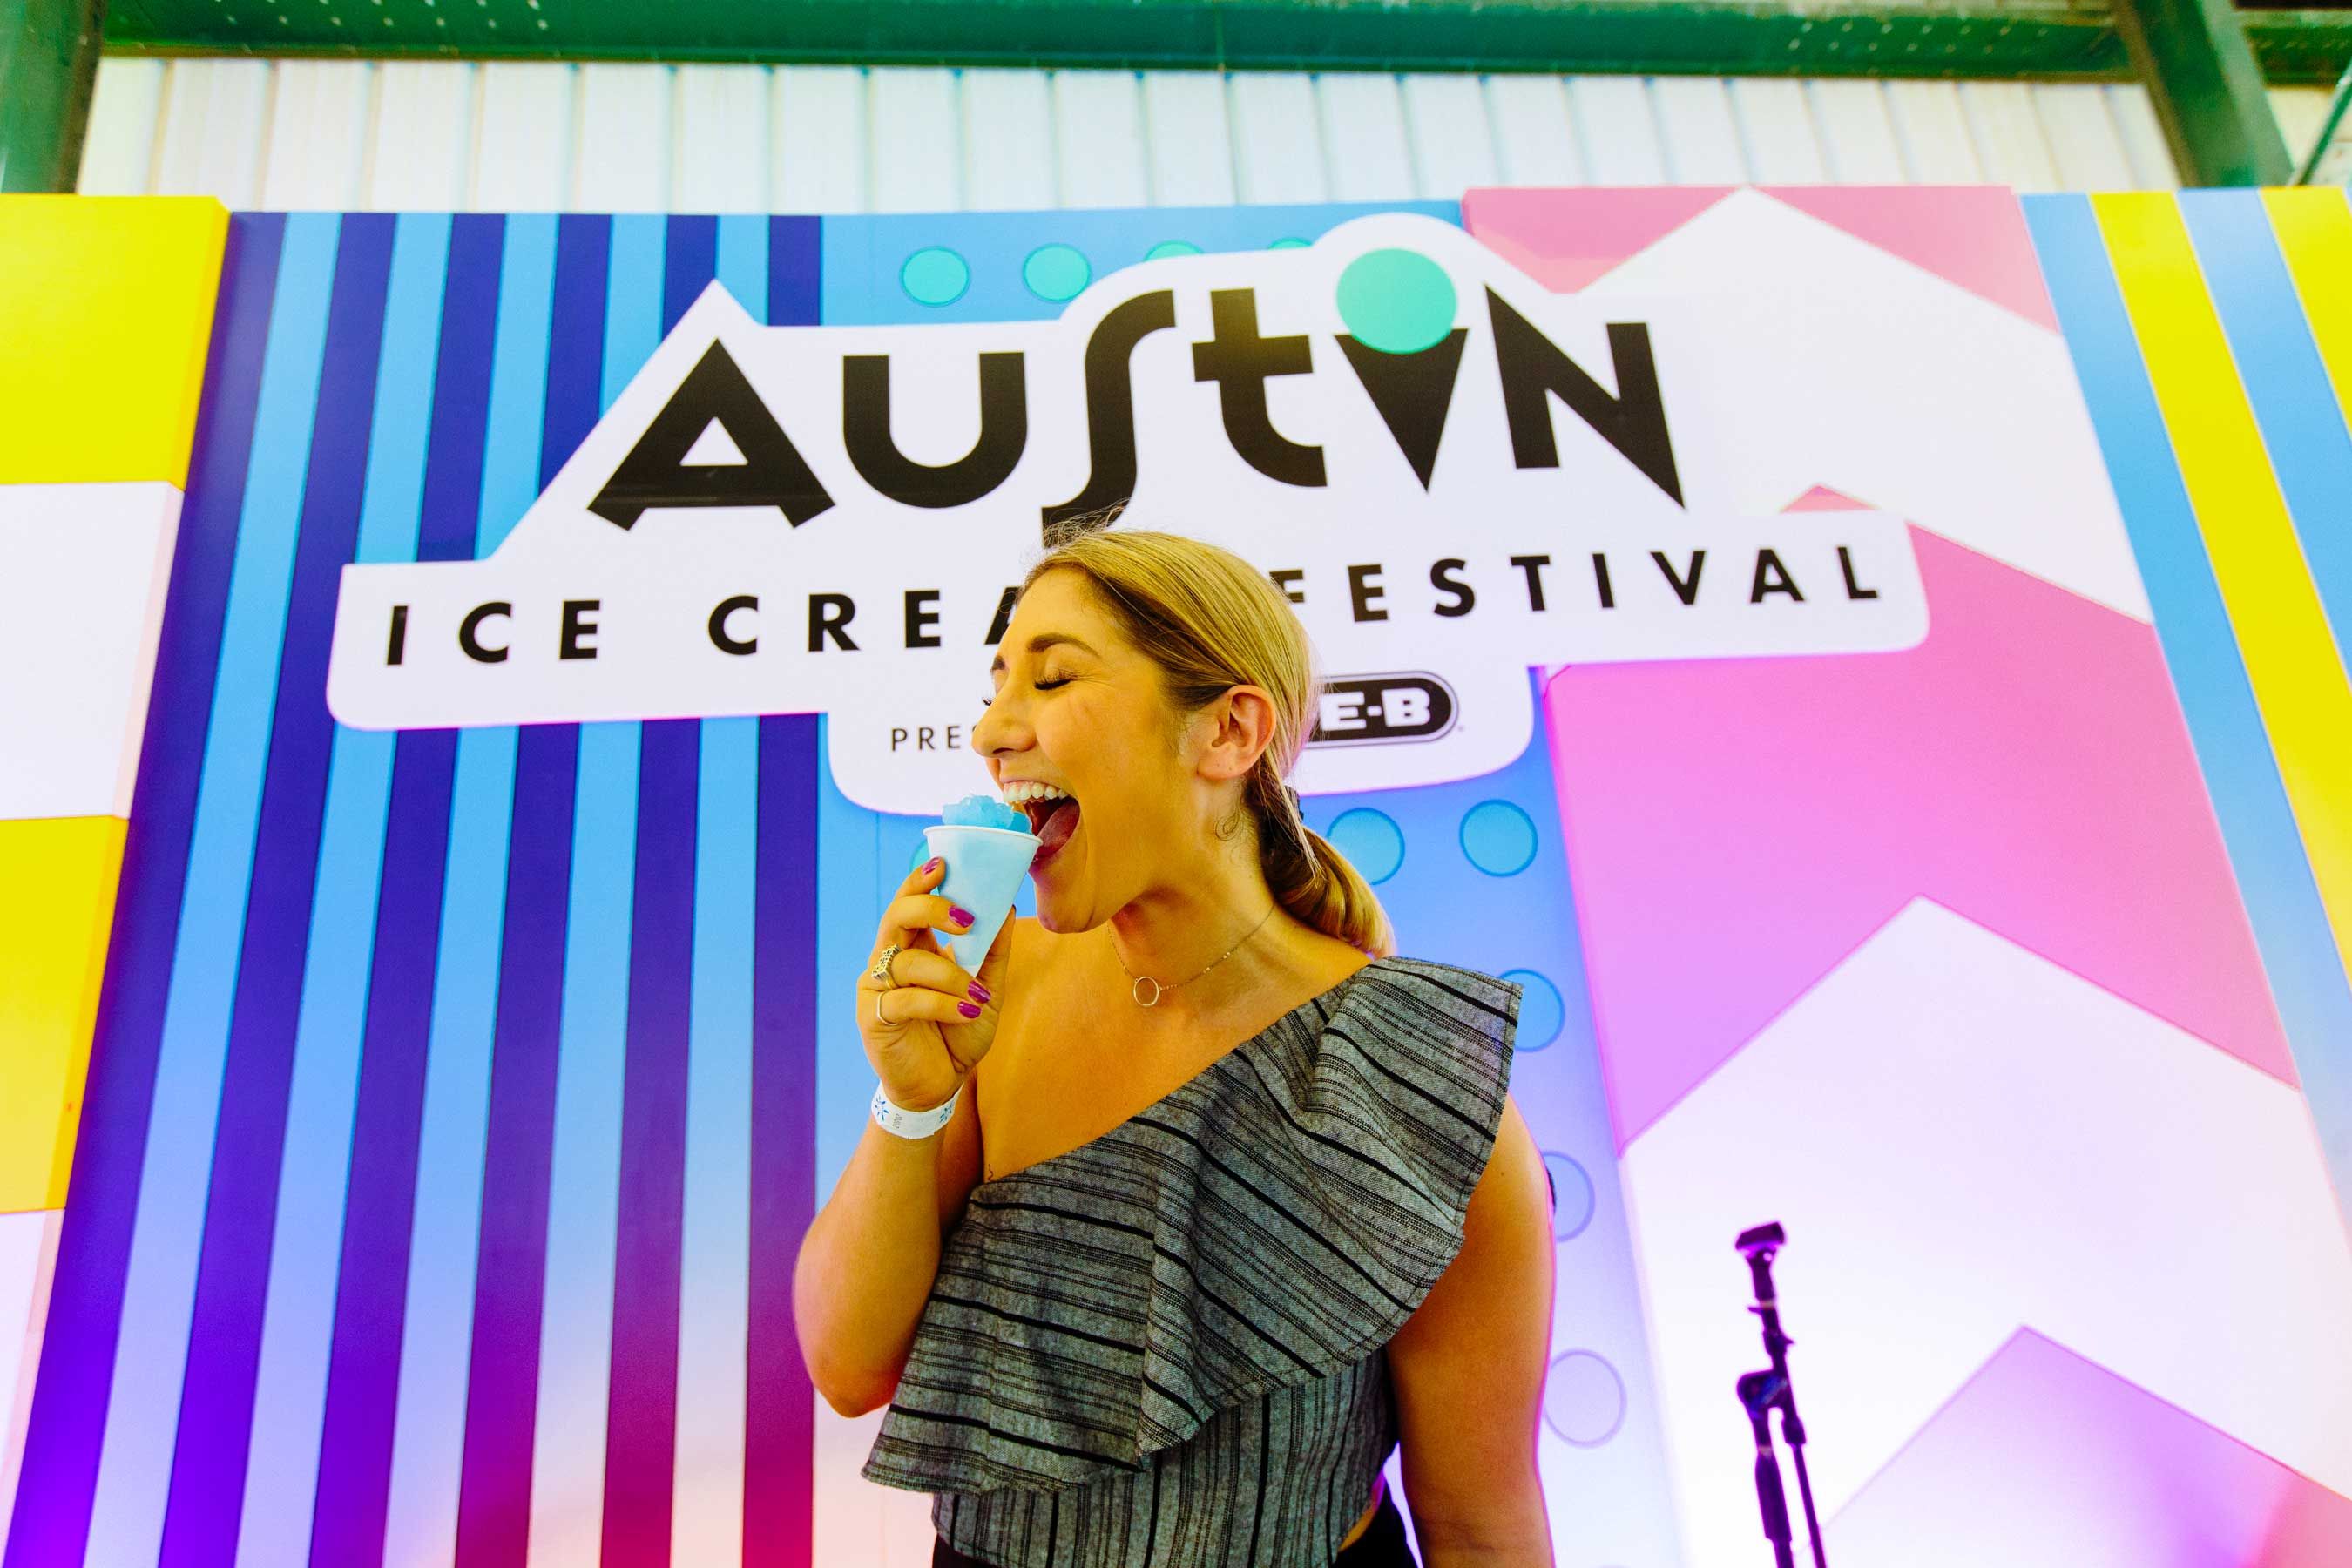 Austin Ice Cream Festival